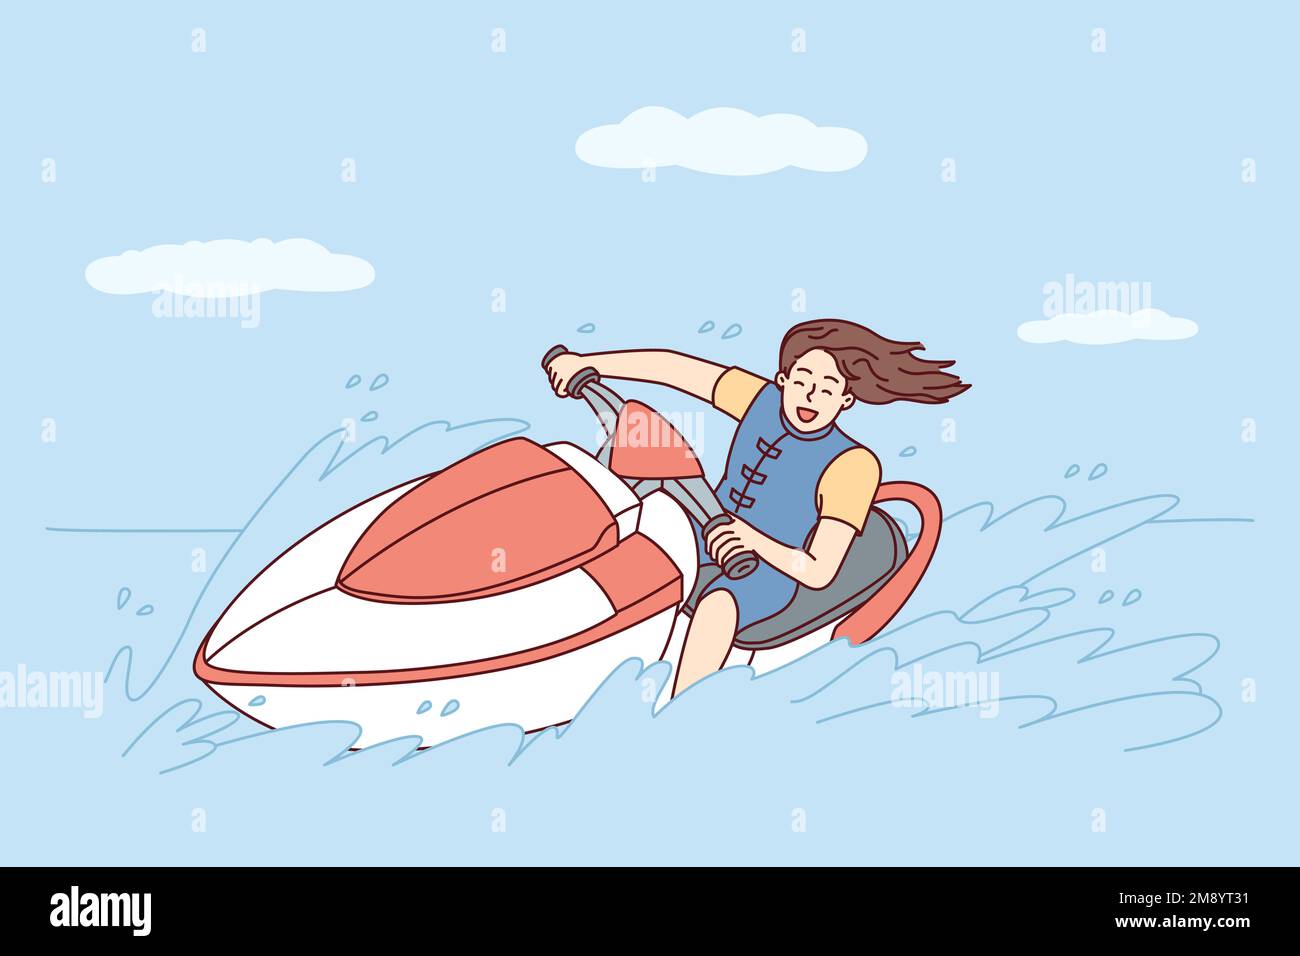 Glückliche Frau mit fließendem Haar fährt während der Sommerreise zu heißen Inseln Jetski auf dem Meer. Ein junges Mädchen geht zu extremen Sportrennen auf Wasserfahrrädern und lässt Spritzer zurück. Abbildung eines flachen Vektors Stock Vektor